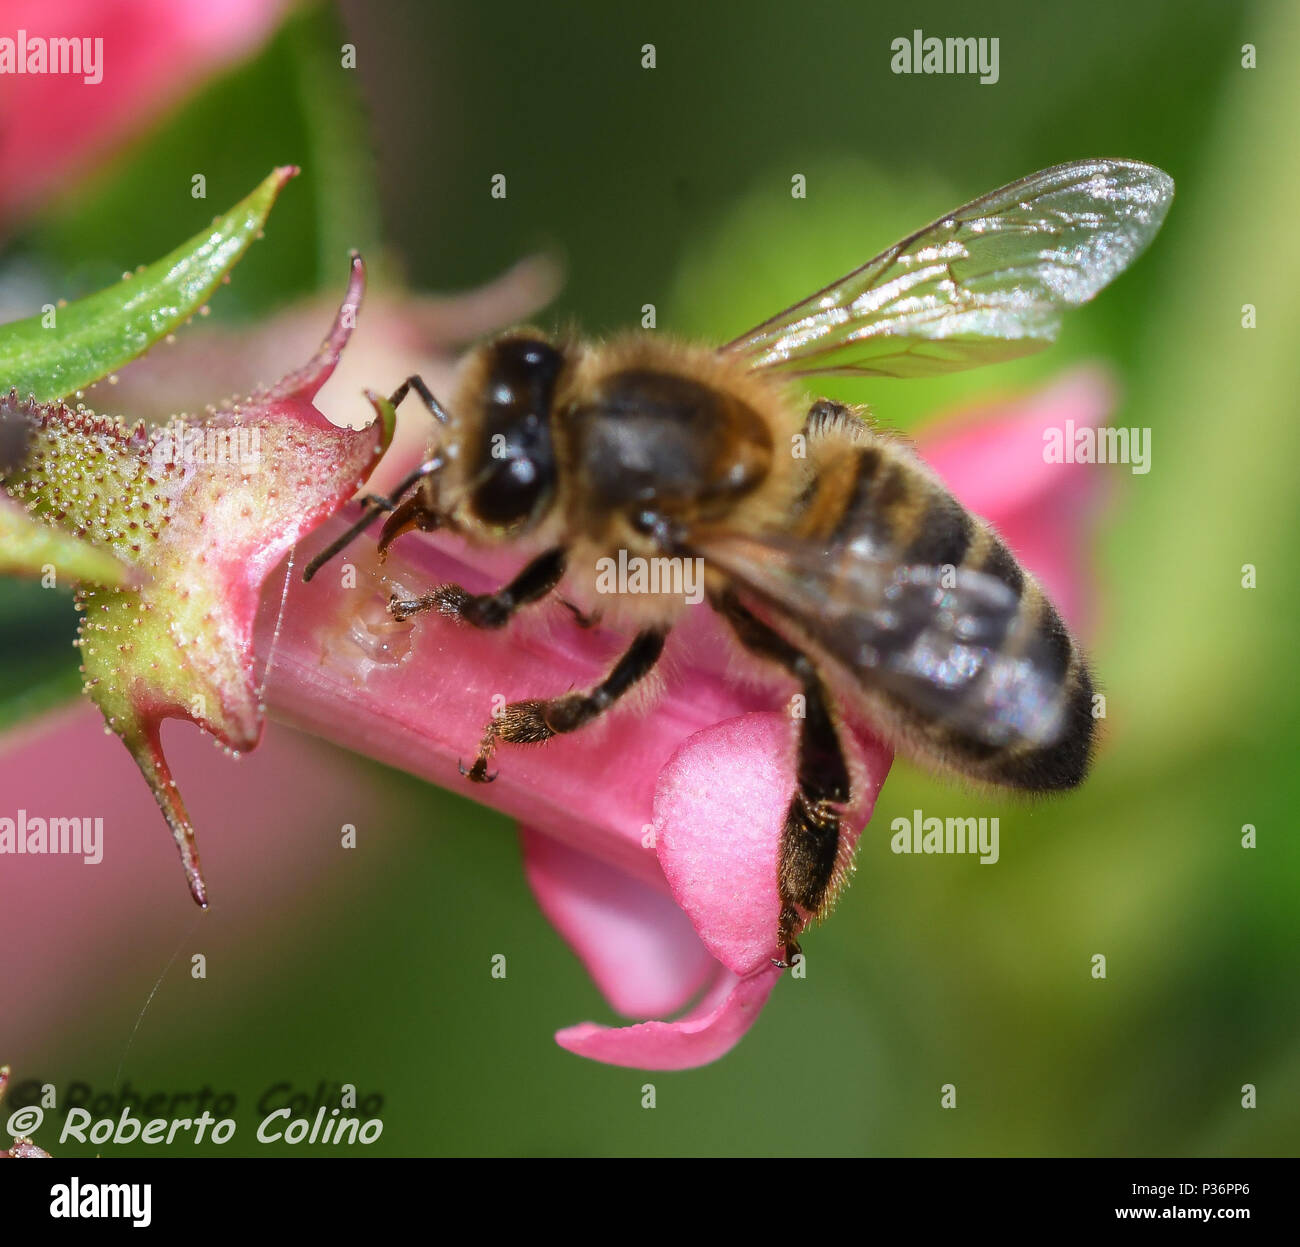 Detalle de una abeja melífera en el momento en que con su lengua, liba el néctar a través del orificio practicado en la corola de la flor de Escalonia Stock Photo